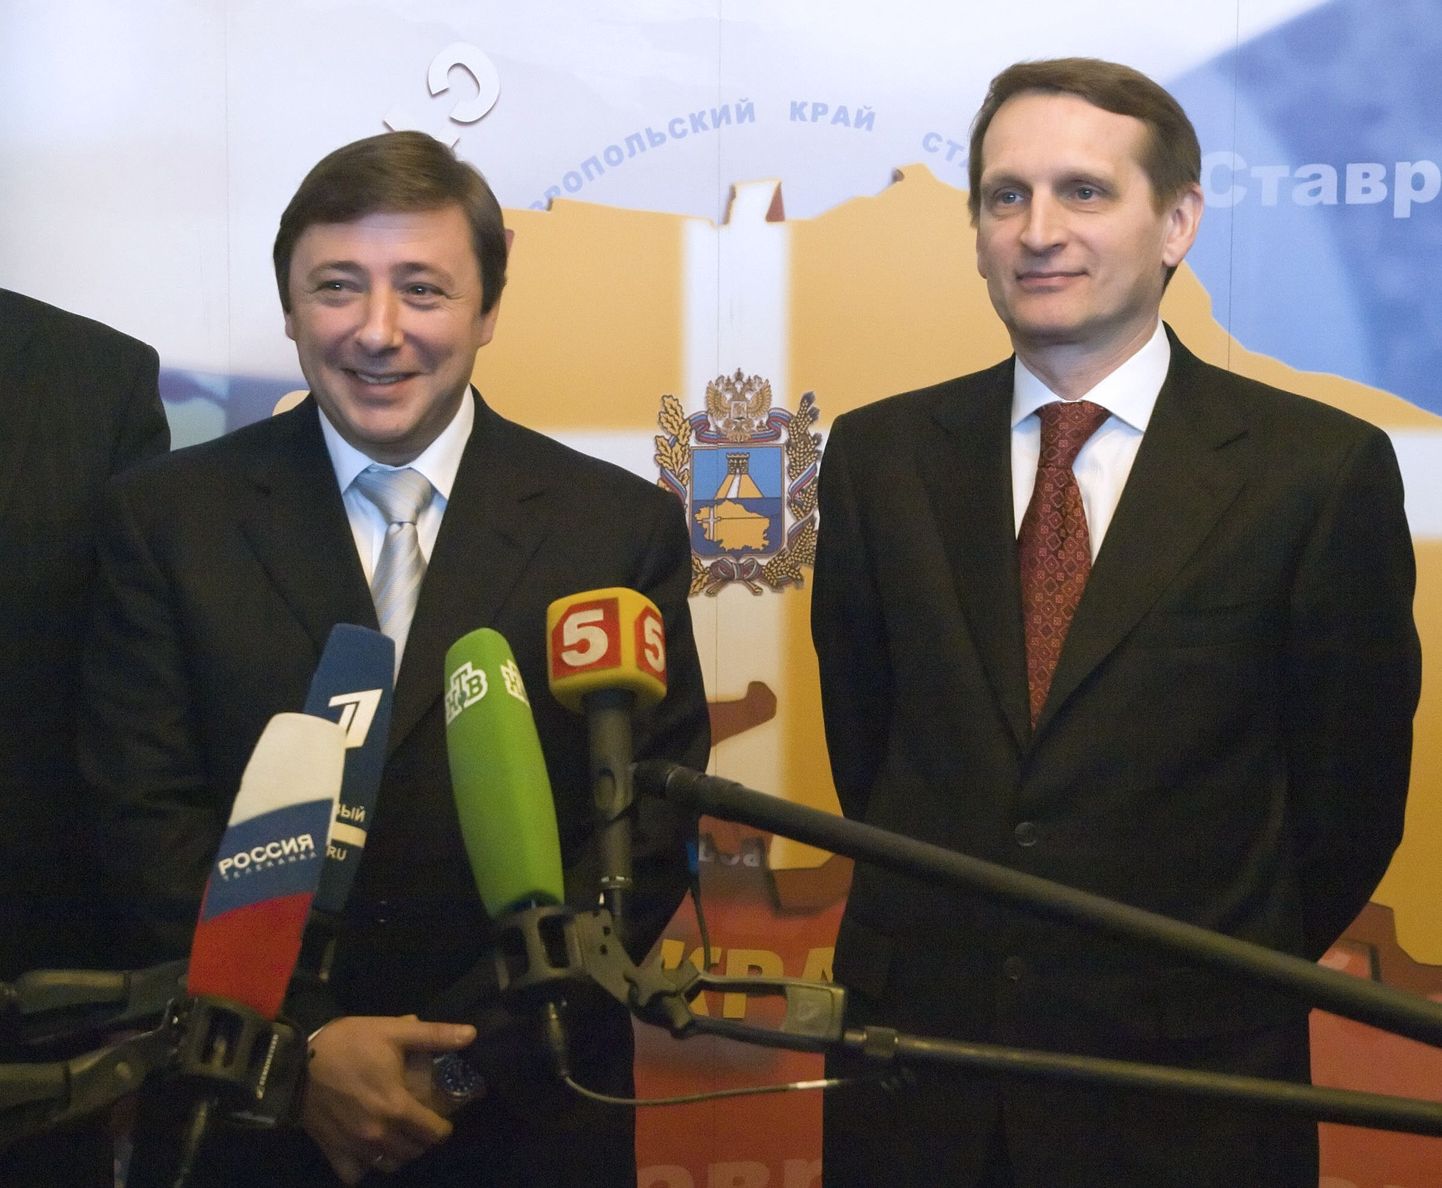 Presdendi administratsiooni juht Sergei Narõškin (paremal) ja asepeaminister Aleksander Hloponin.